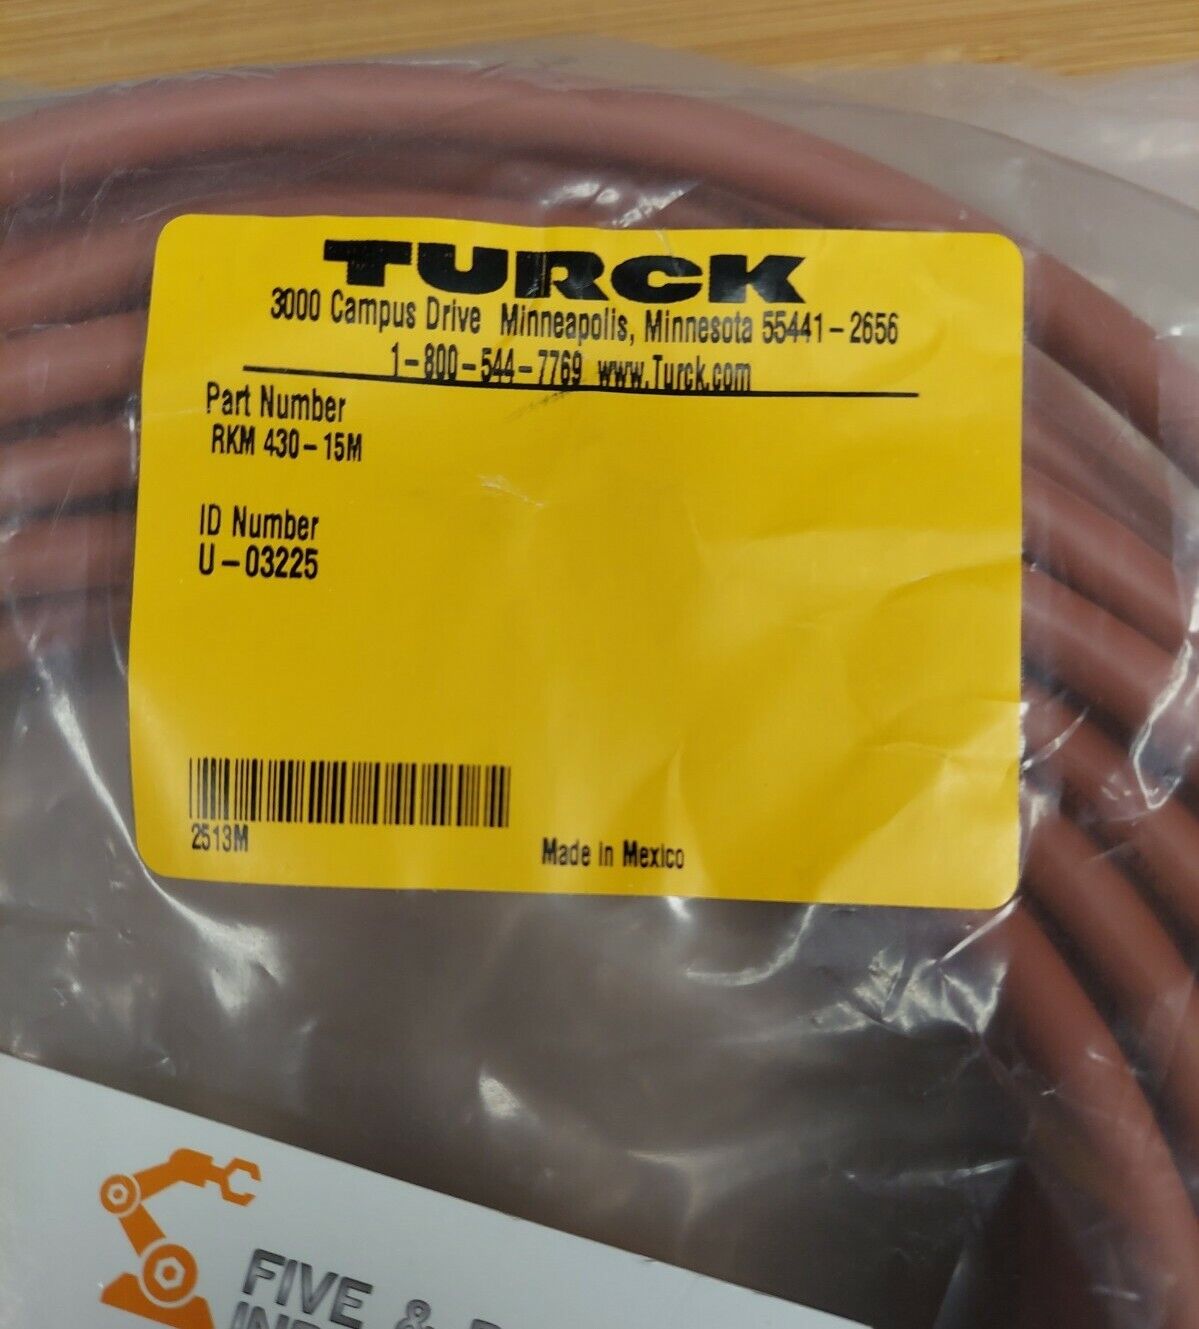 Turck RSM RKM 430-15M CABLE / CORDSET U-03225 (CBL105)